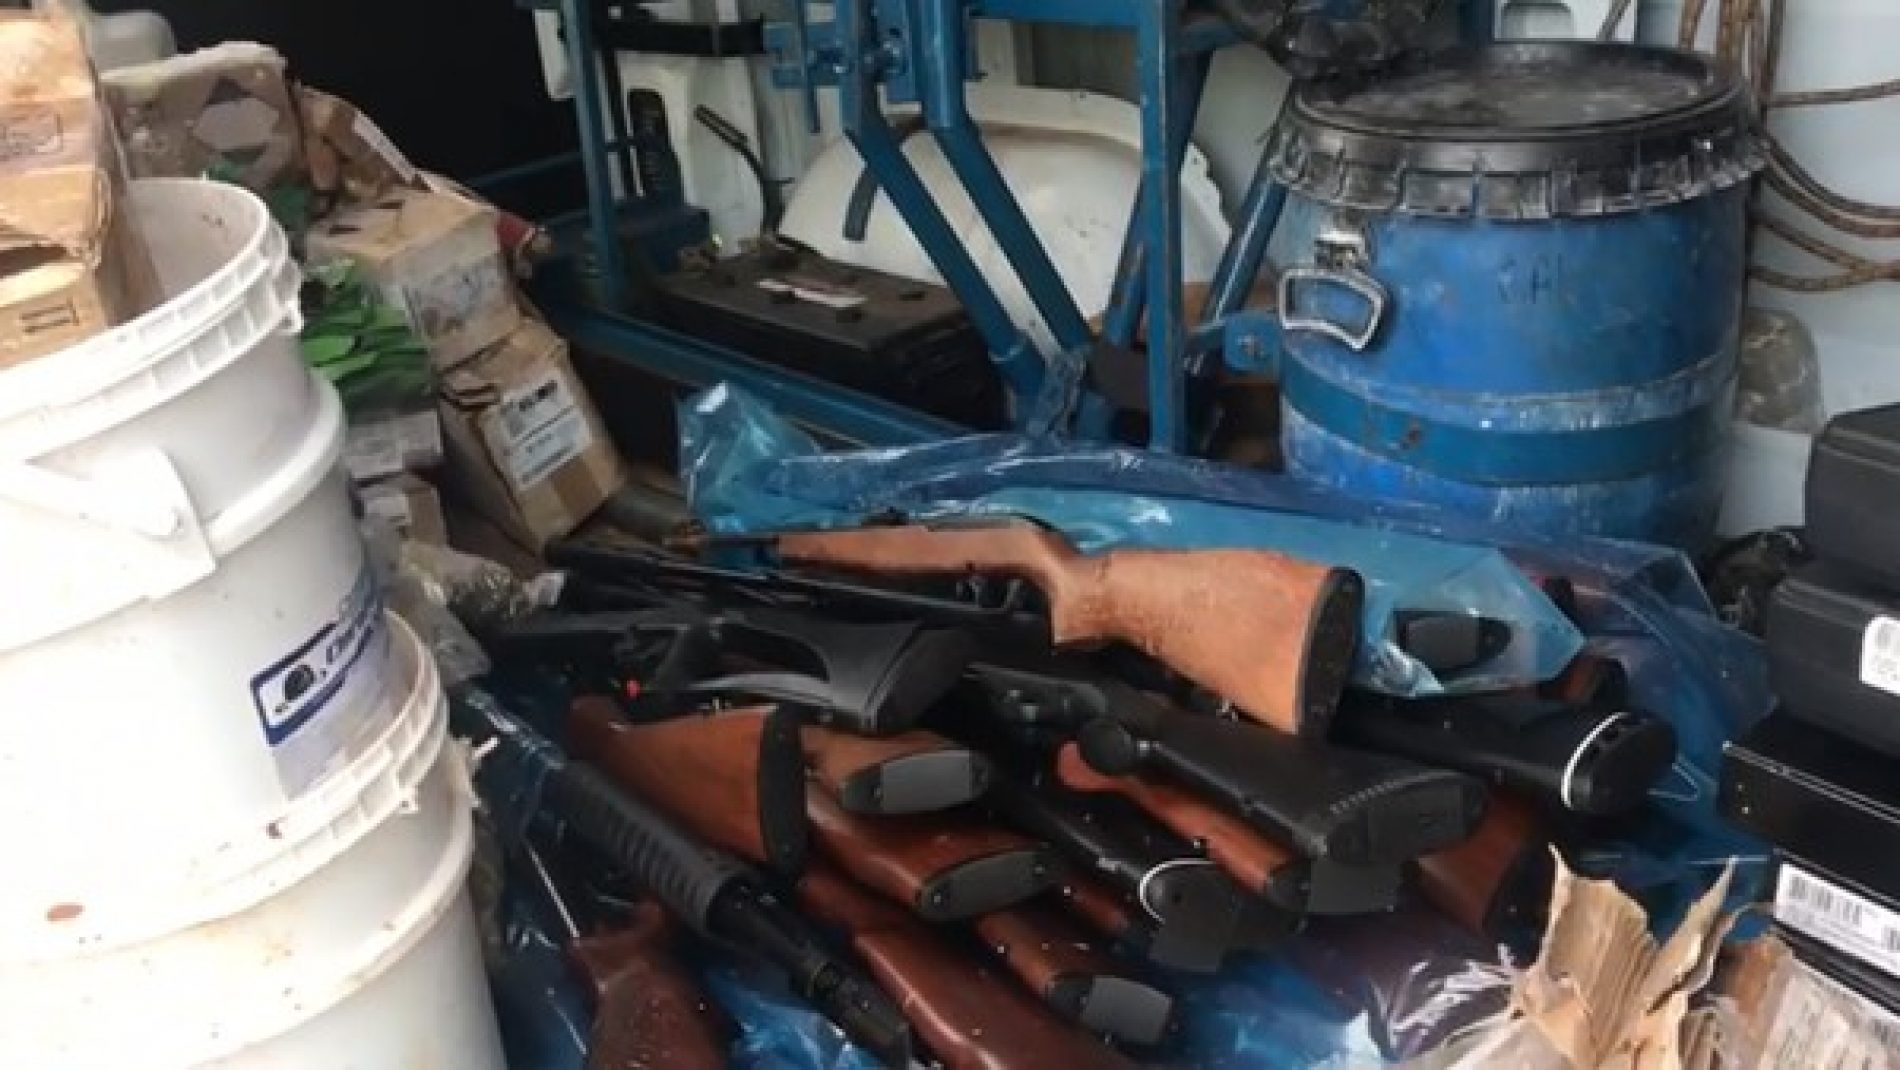 BEBEDOURO: Armas e munições são apreendidas após caminhão tombar